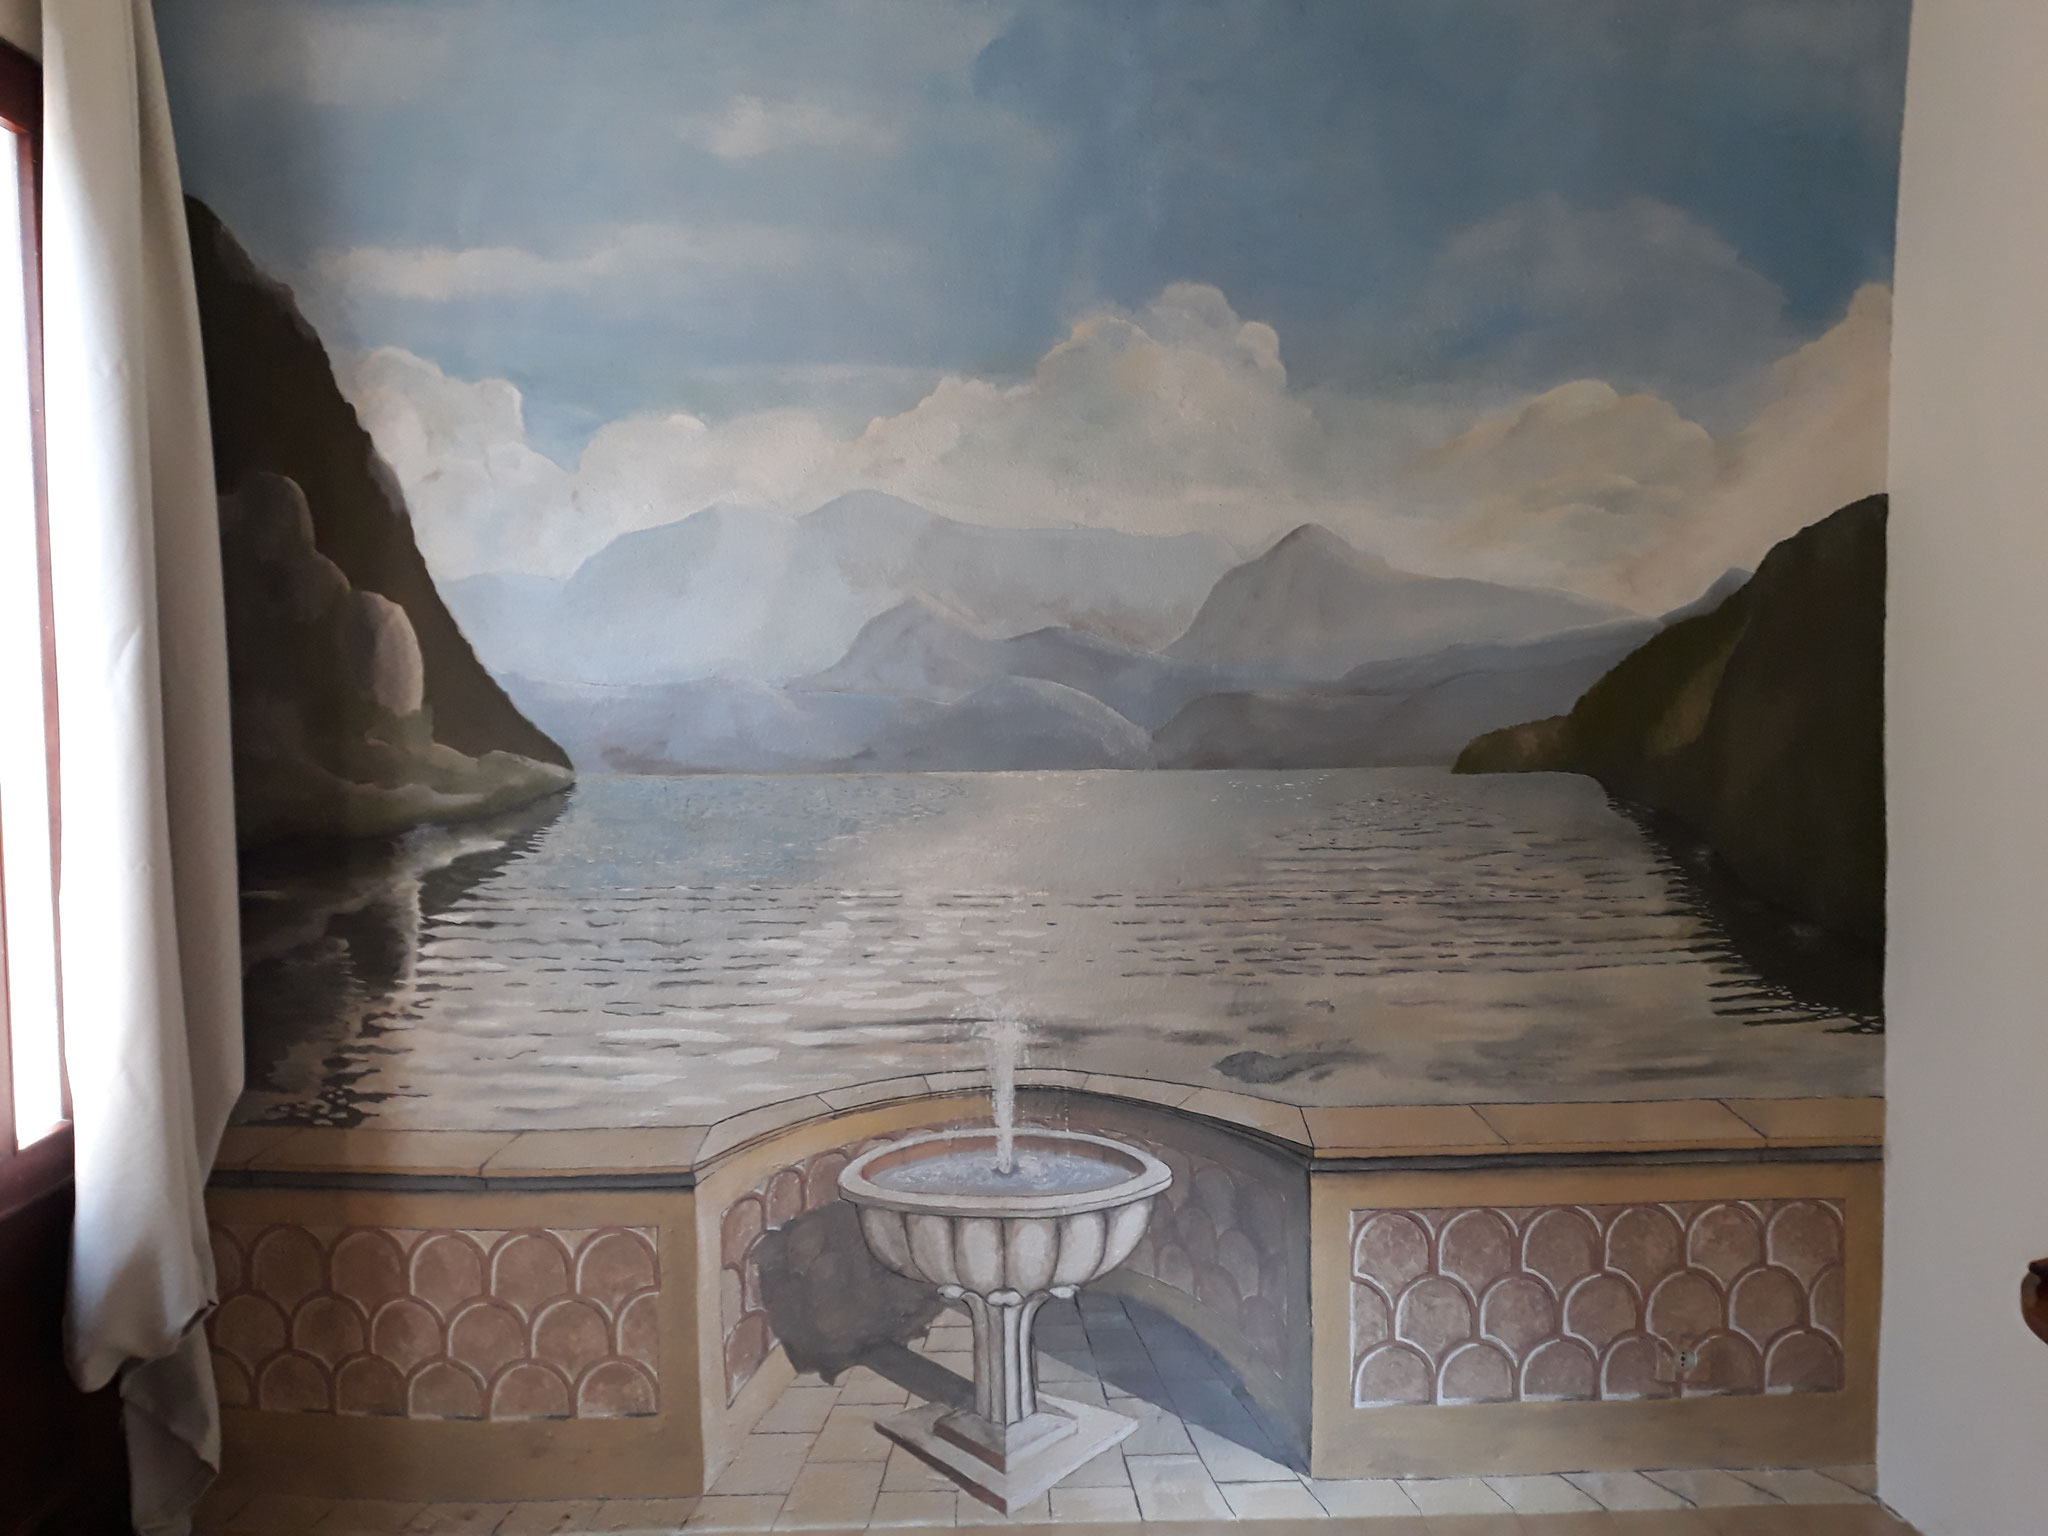 Wandgemälde, ca. 3x2.8 m, Ferienwohnung am Lago Maggiore (der fehlende Seeblick ;-) )